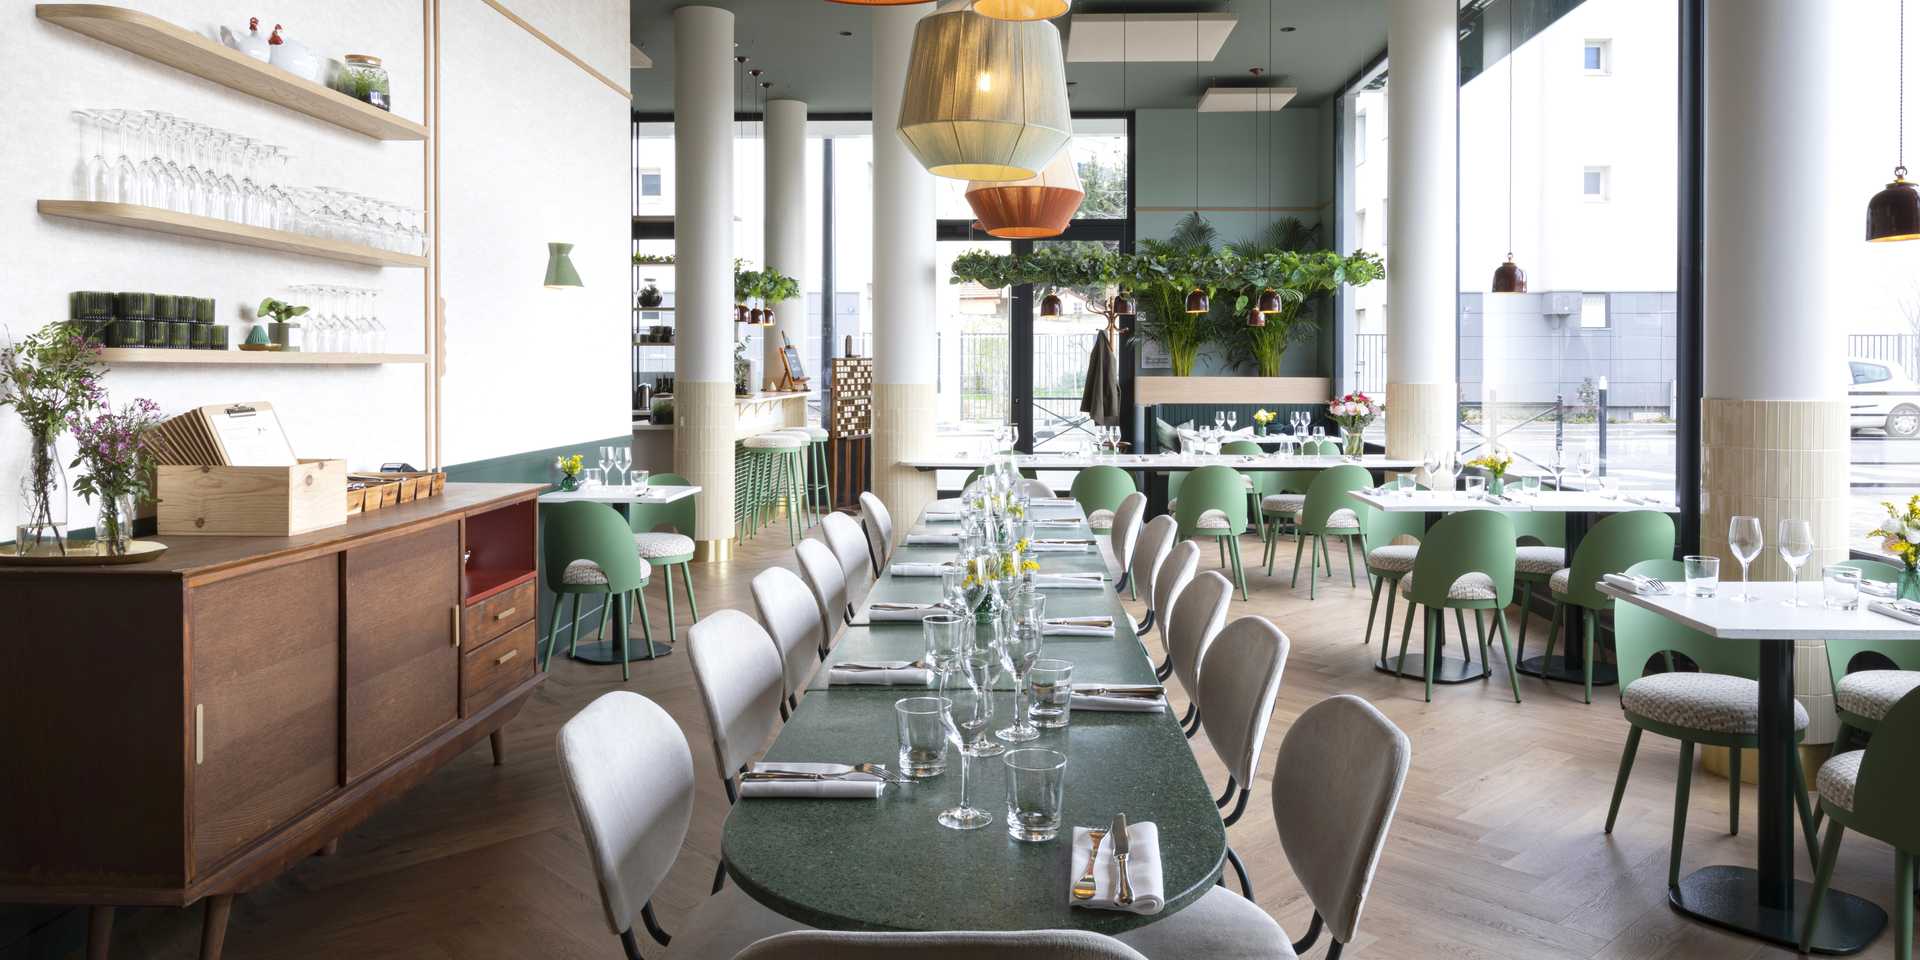 Restaurant à Lyon aménagé par un architecte